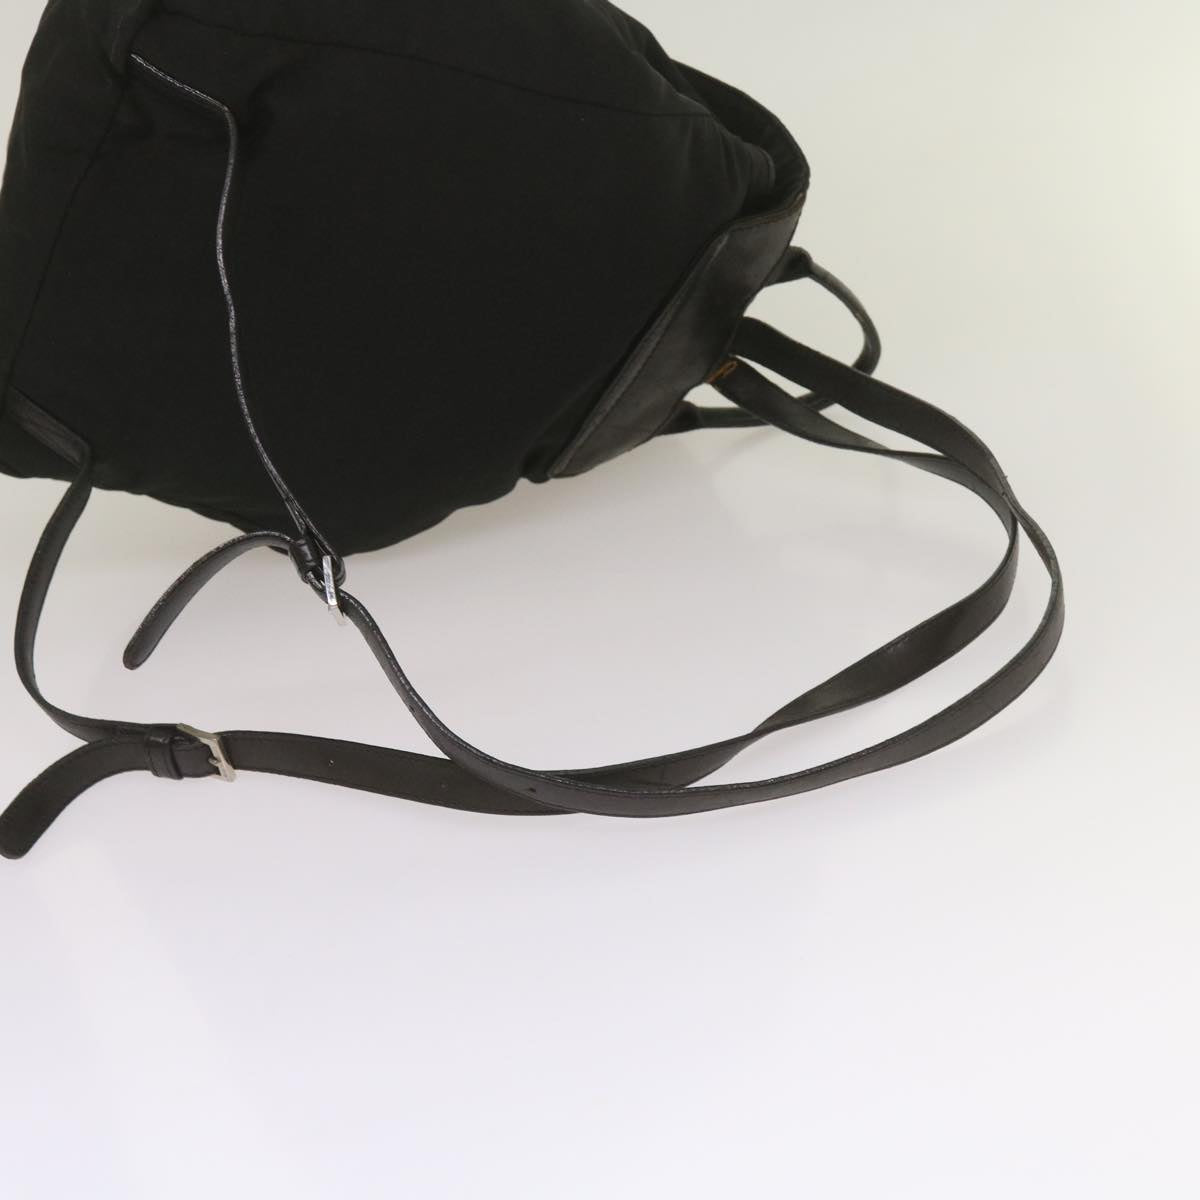 BOTTEGA VENETA Leopard Backpack Shoulder Bag Nylon 6Set Black Brown Auth bs12337